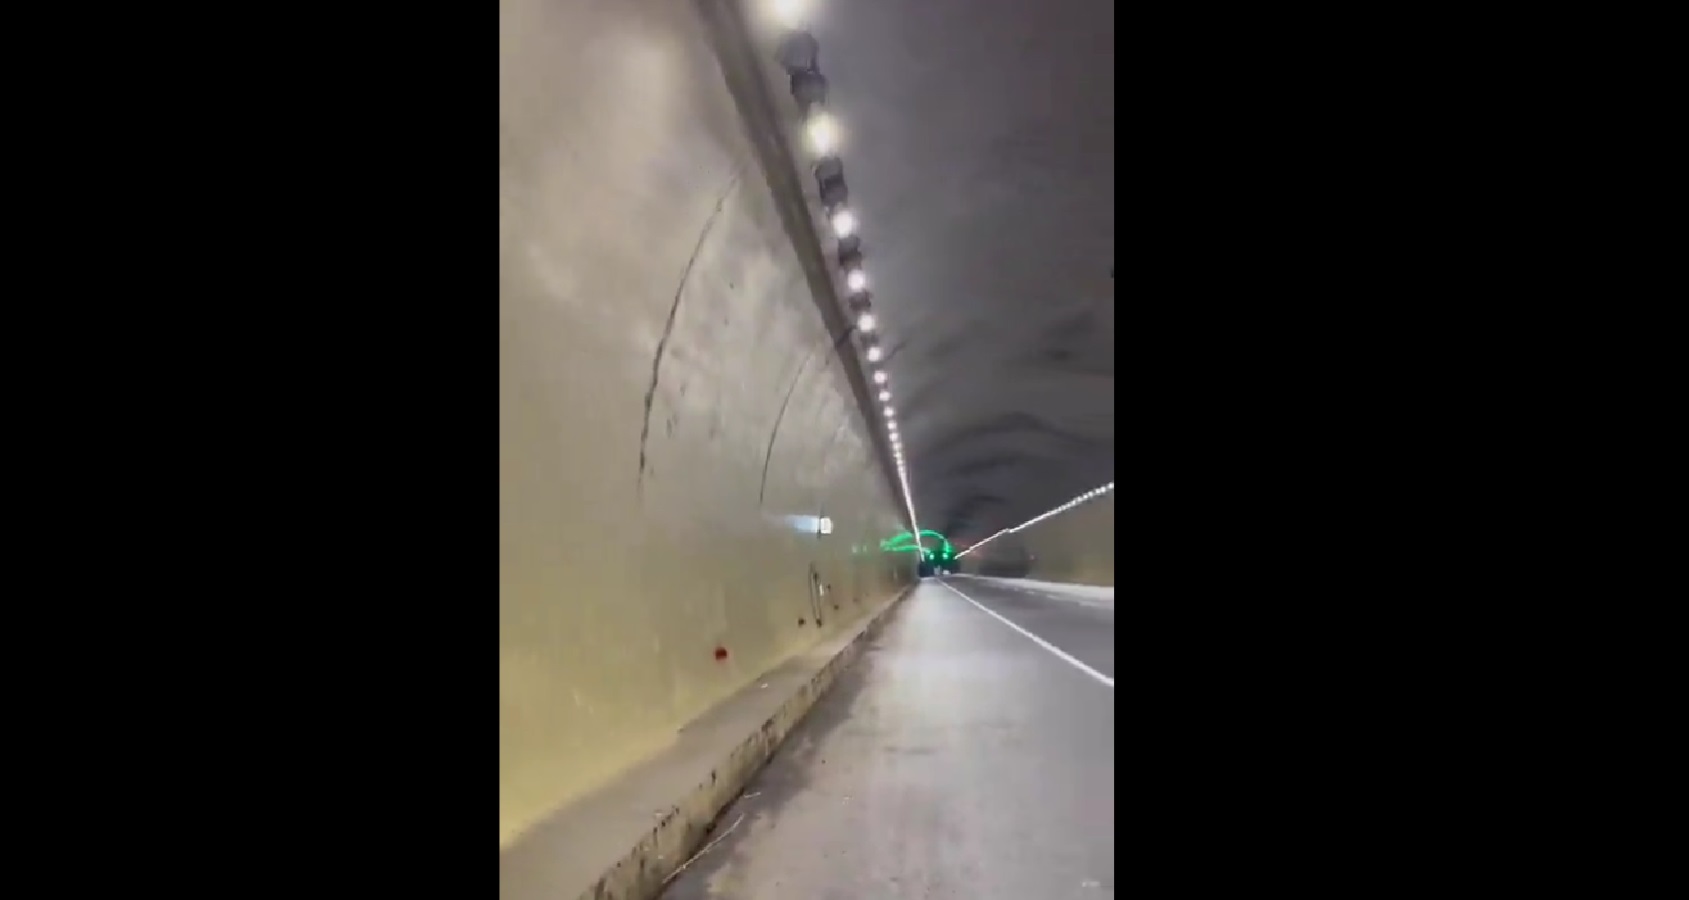 Kementerian PUPR Ungkap Hasil Investigasi Terowongan Tol Cisumdawu Pascagempa Sumedang, Begini Kondisinya